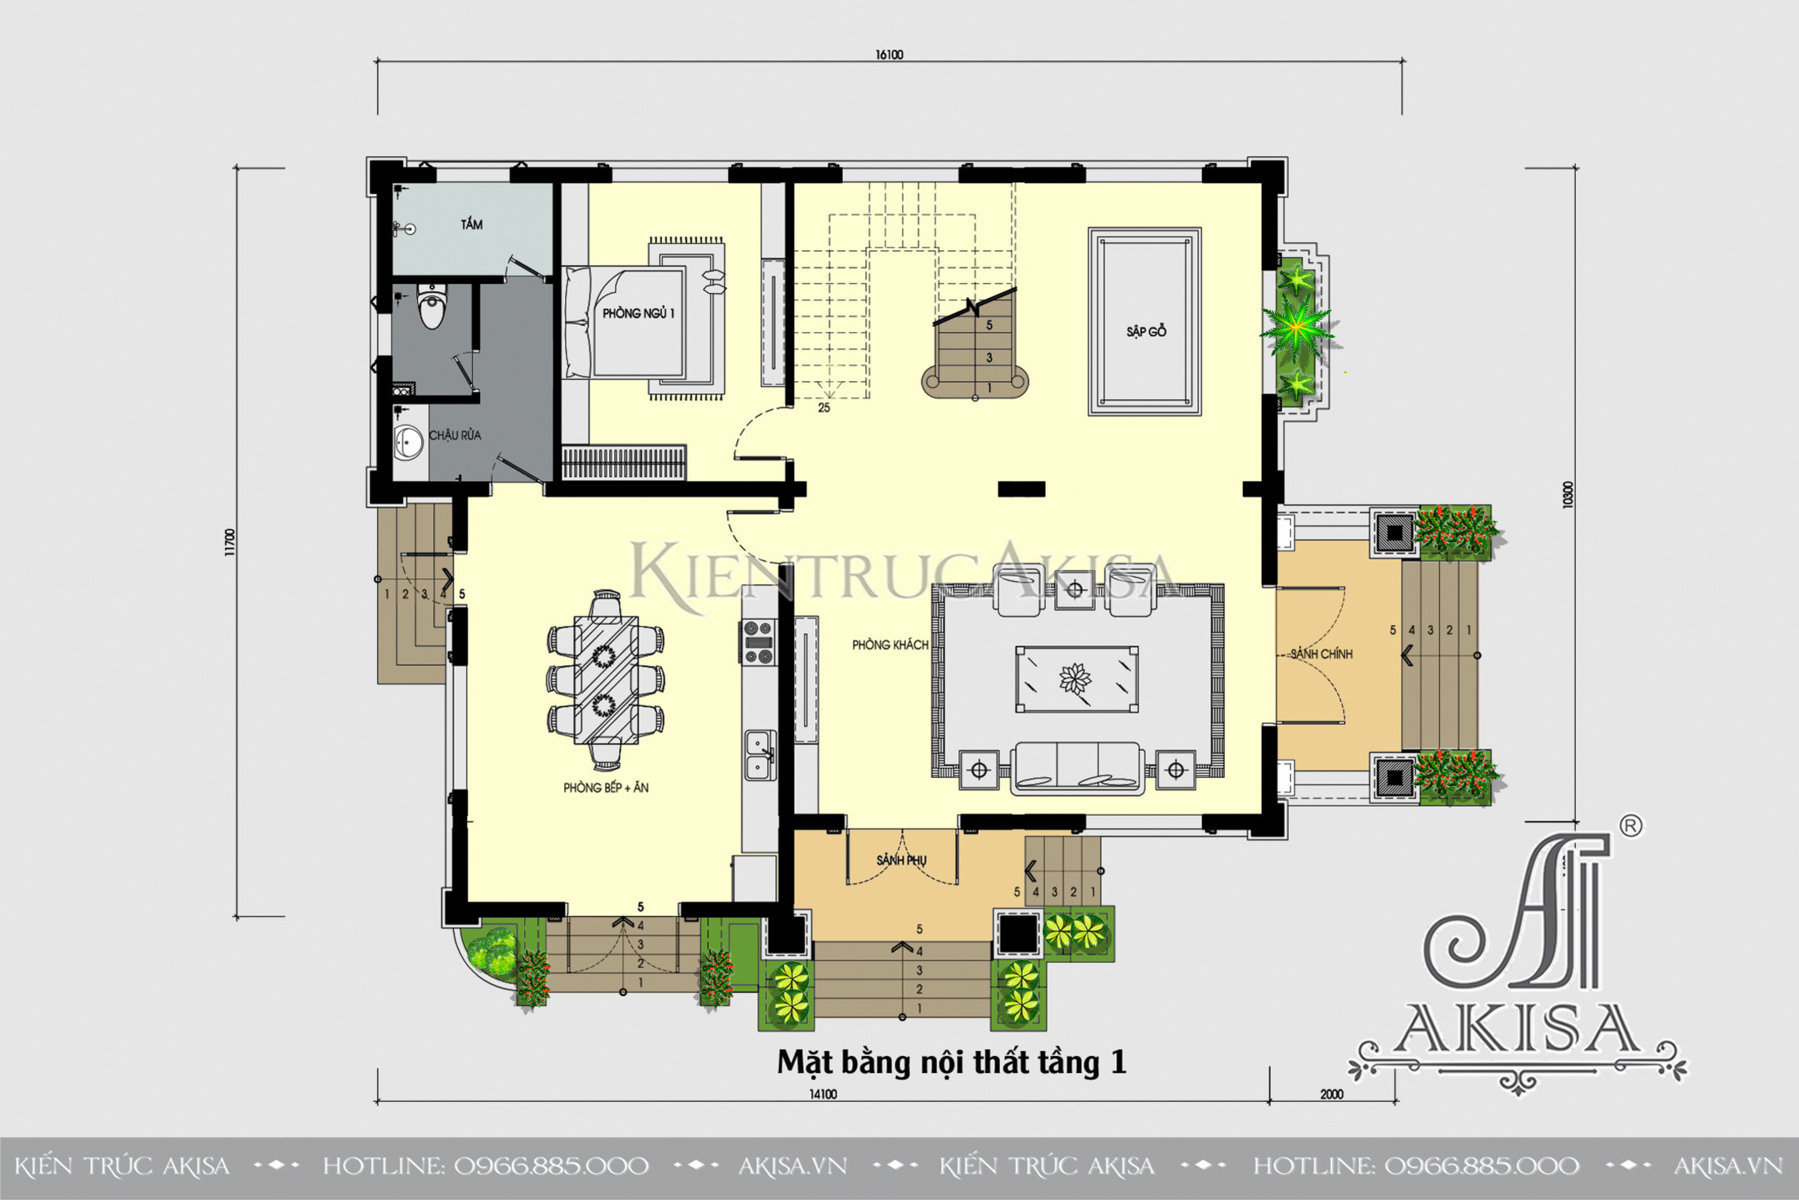 Biệt thự tân cổ điển mái thái 2 tầng 4 phòng ngủ (CĐT: ông Tú - Thái Nguyên) BT22476